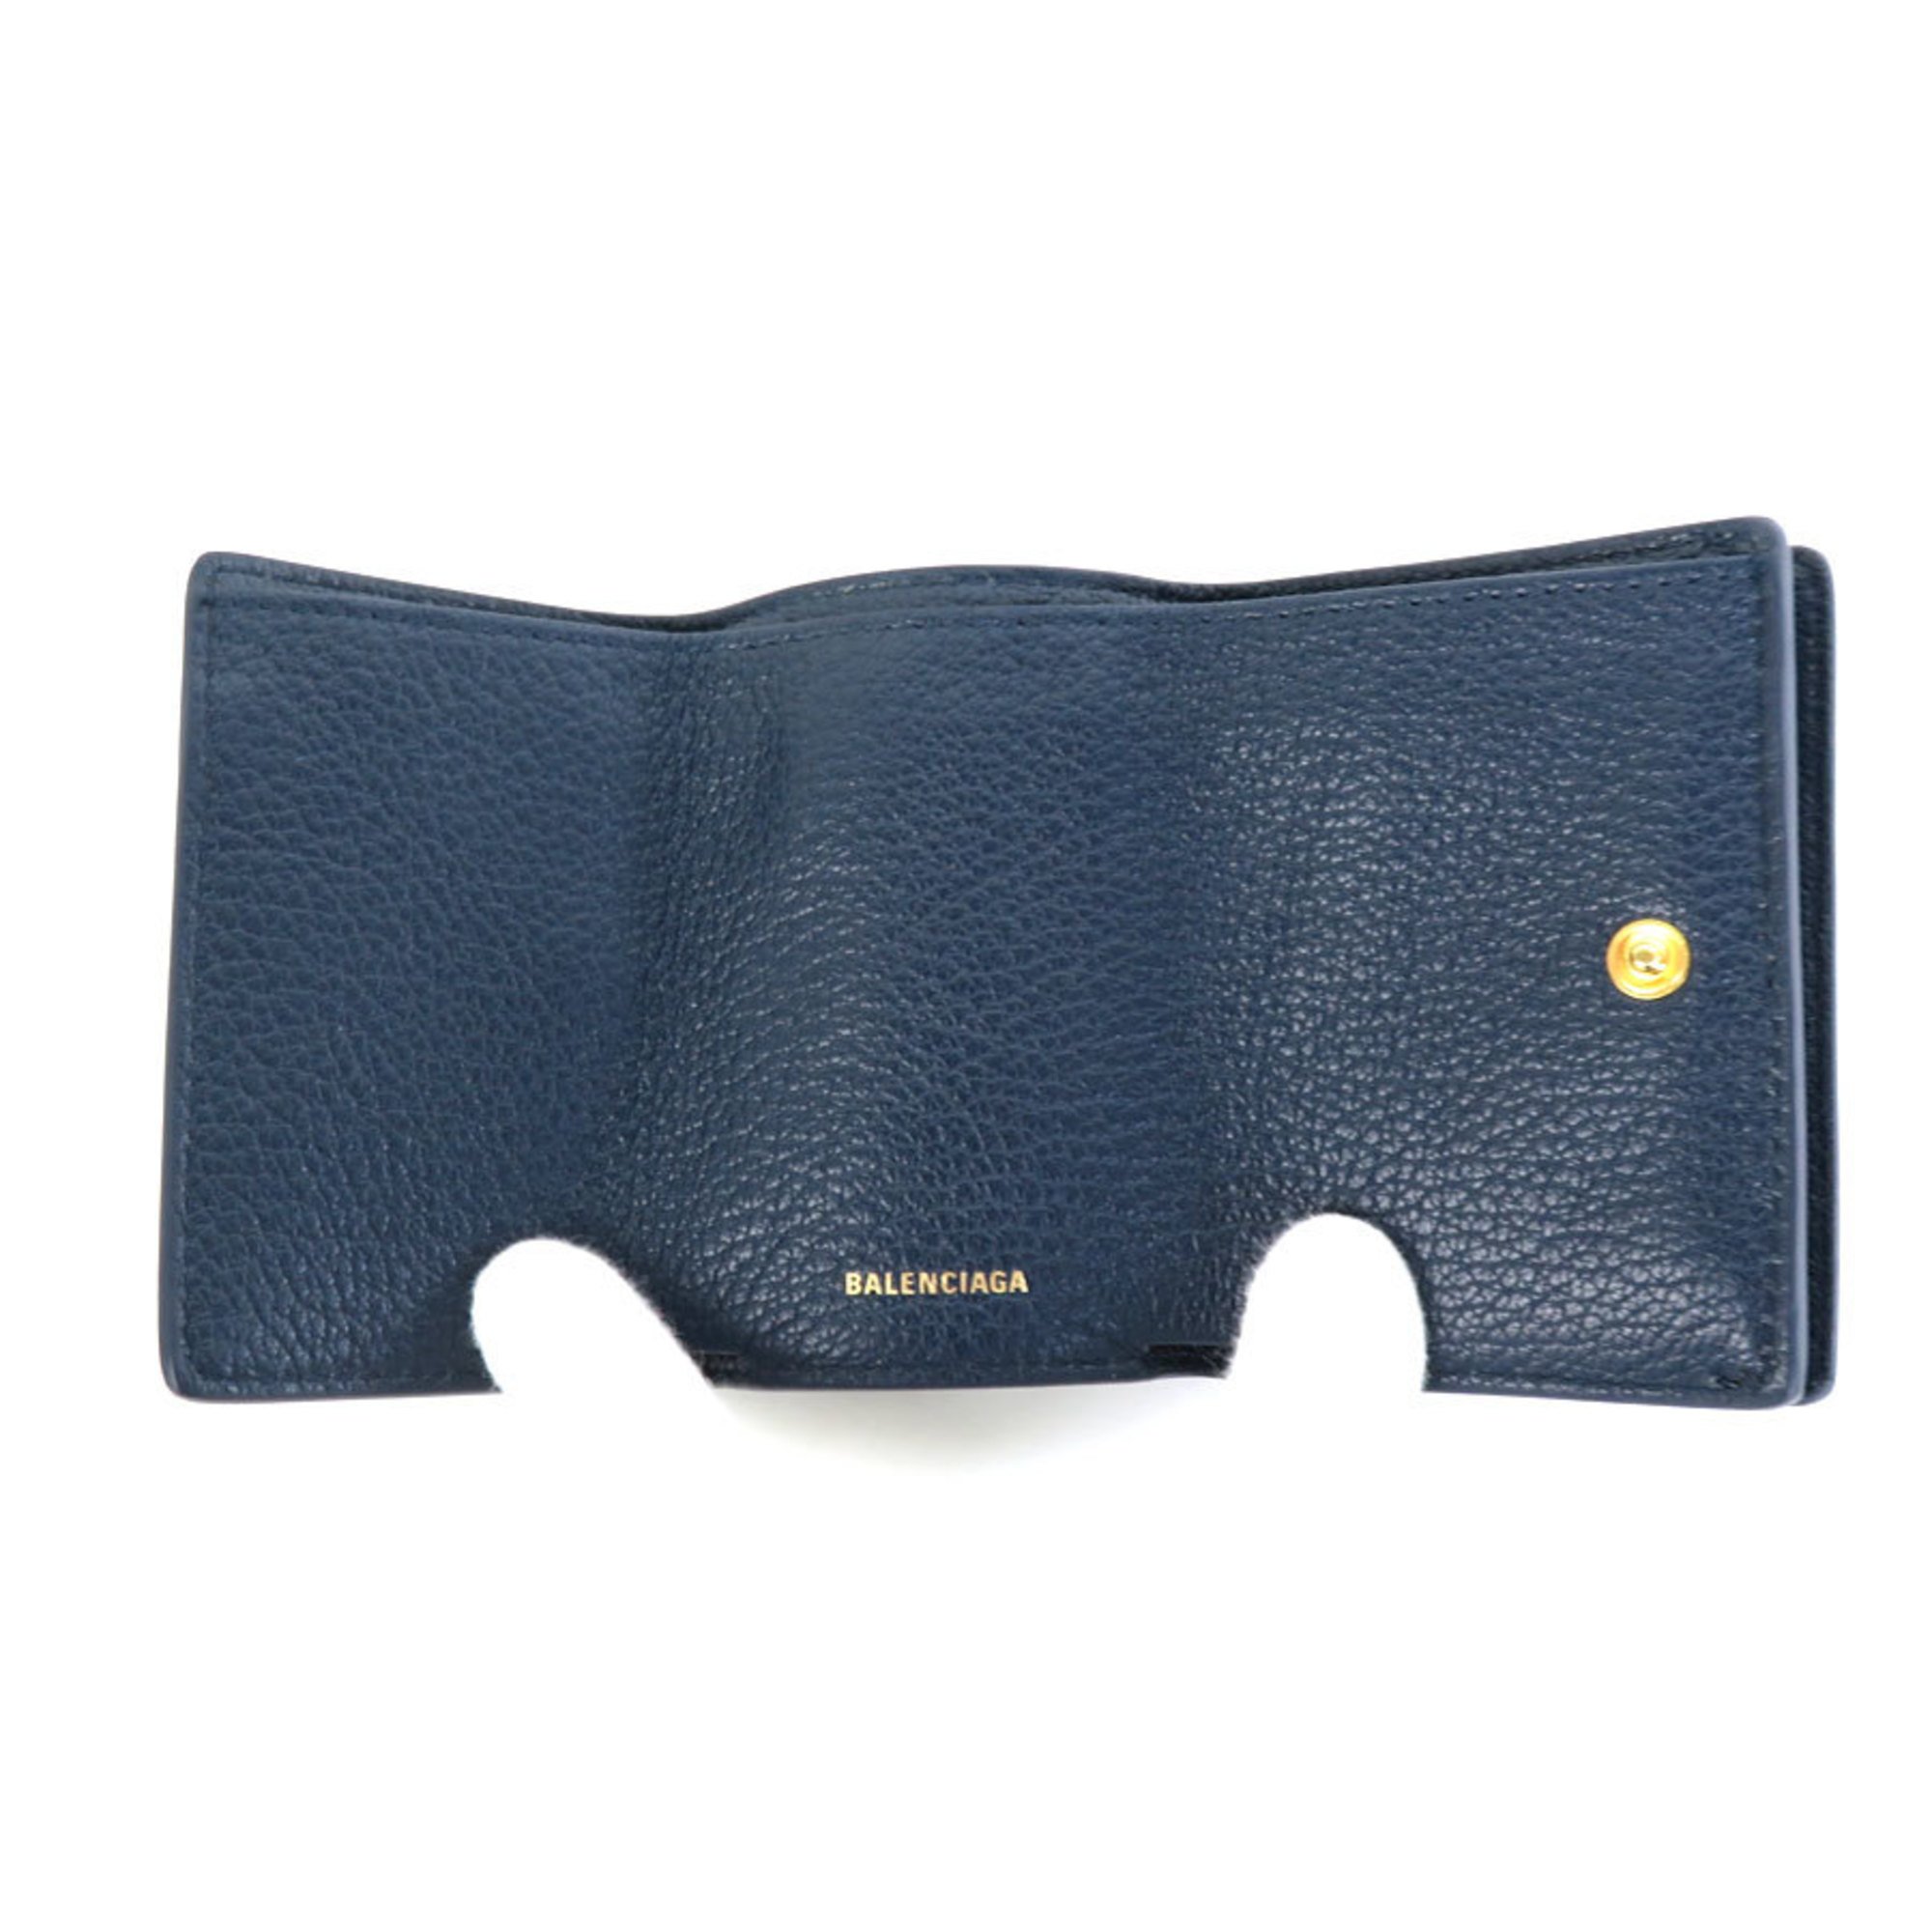 Balenciaga BALENCIAGA trifold wallet mini leather navy gold